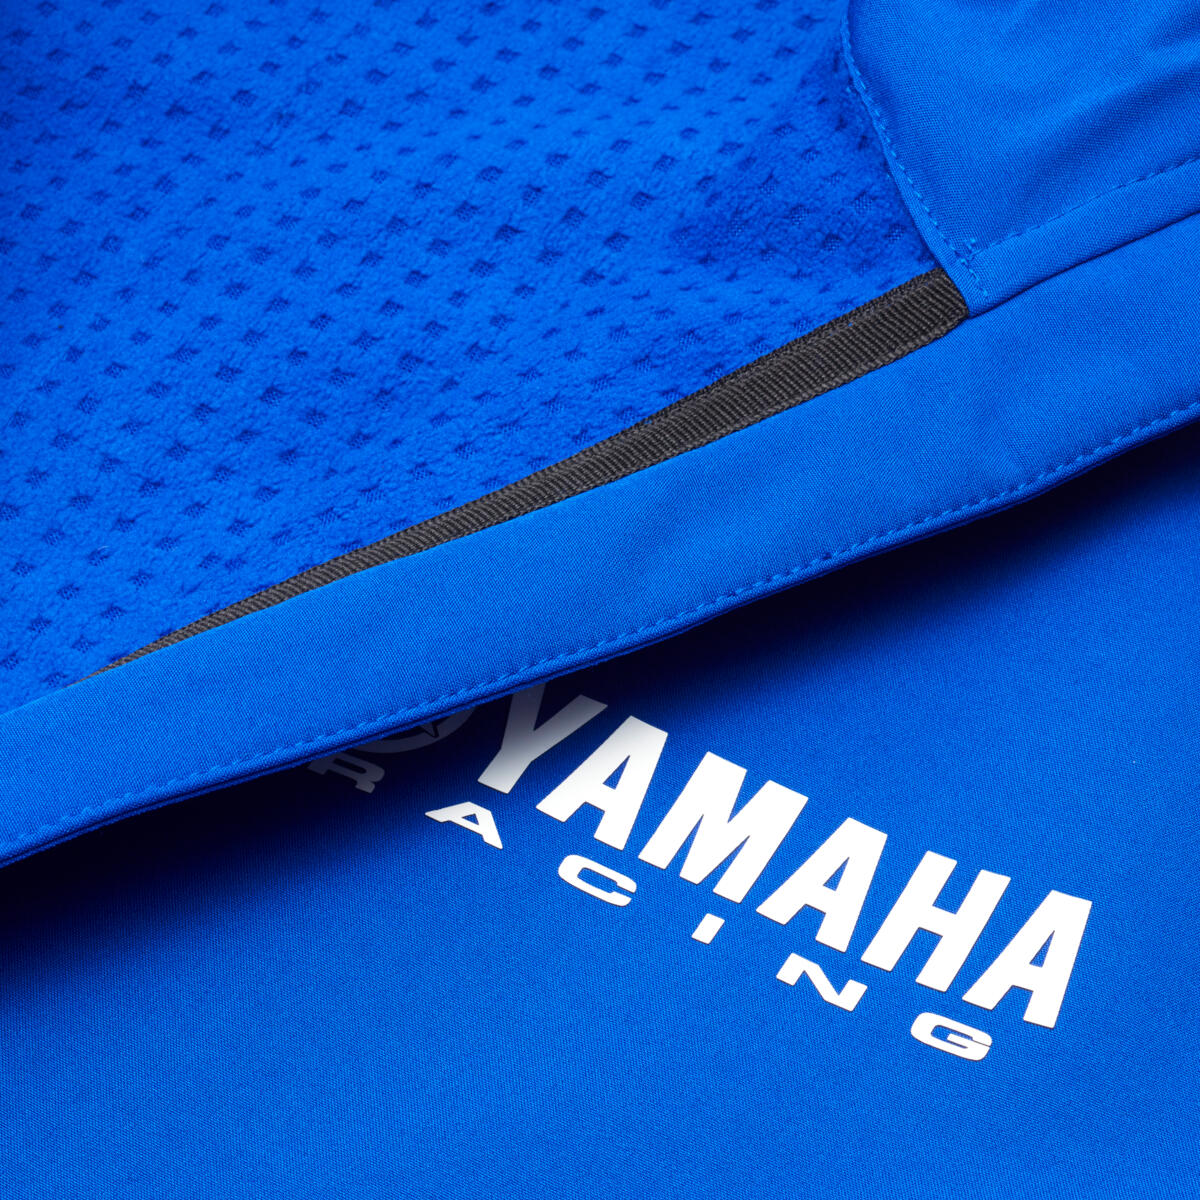 Die Paddock Blue Softshell-Jacke hat eine feste Kapuze und ein Fleece-Futter, das an windigen Tagen für zusätzliche Wärme und Komfort sorgt. Die hochwertige Softshell-Jacke trägt Yamaha Racing-Logos auf Brust und Ärmeln und verfügt über verschiedene kontrastierende Designelemente in Schwarz und Weiß.